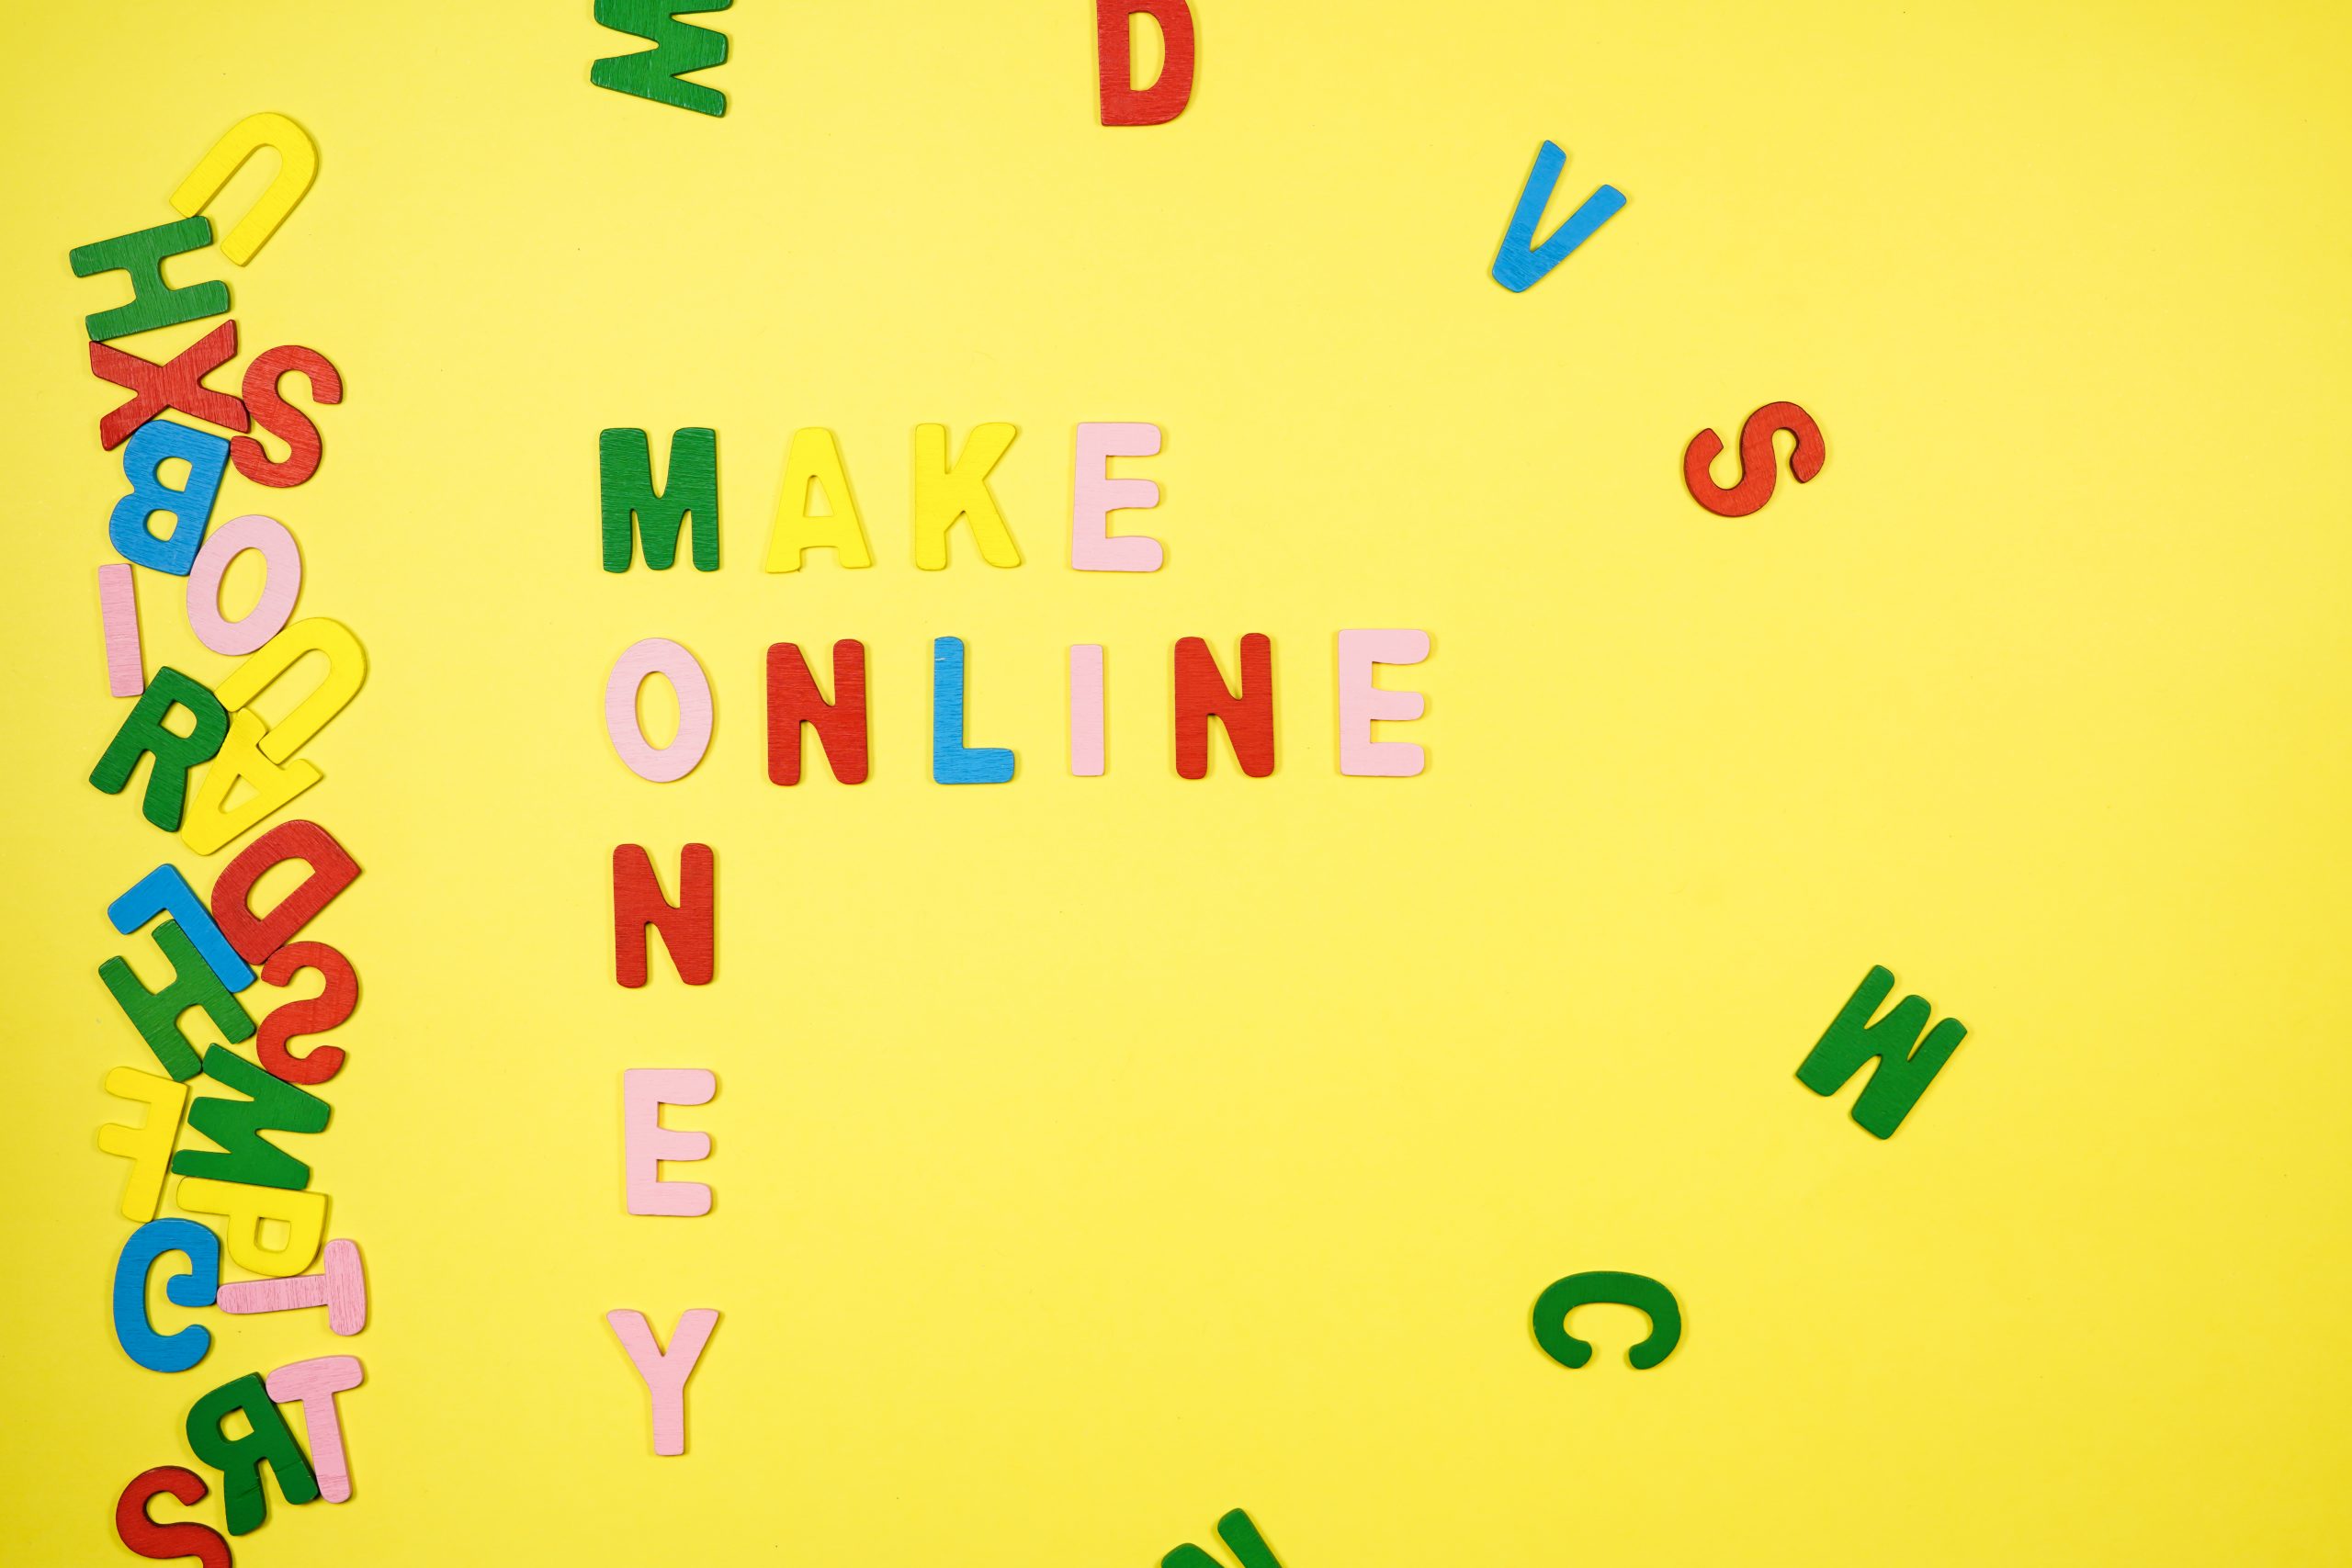 Make Online Money